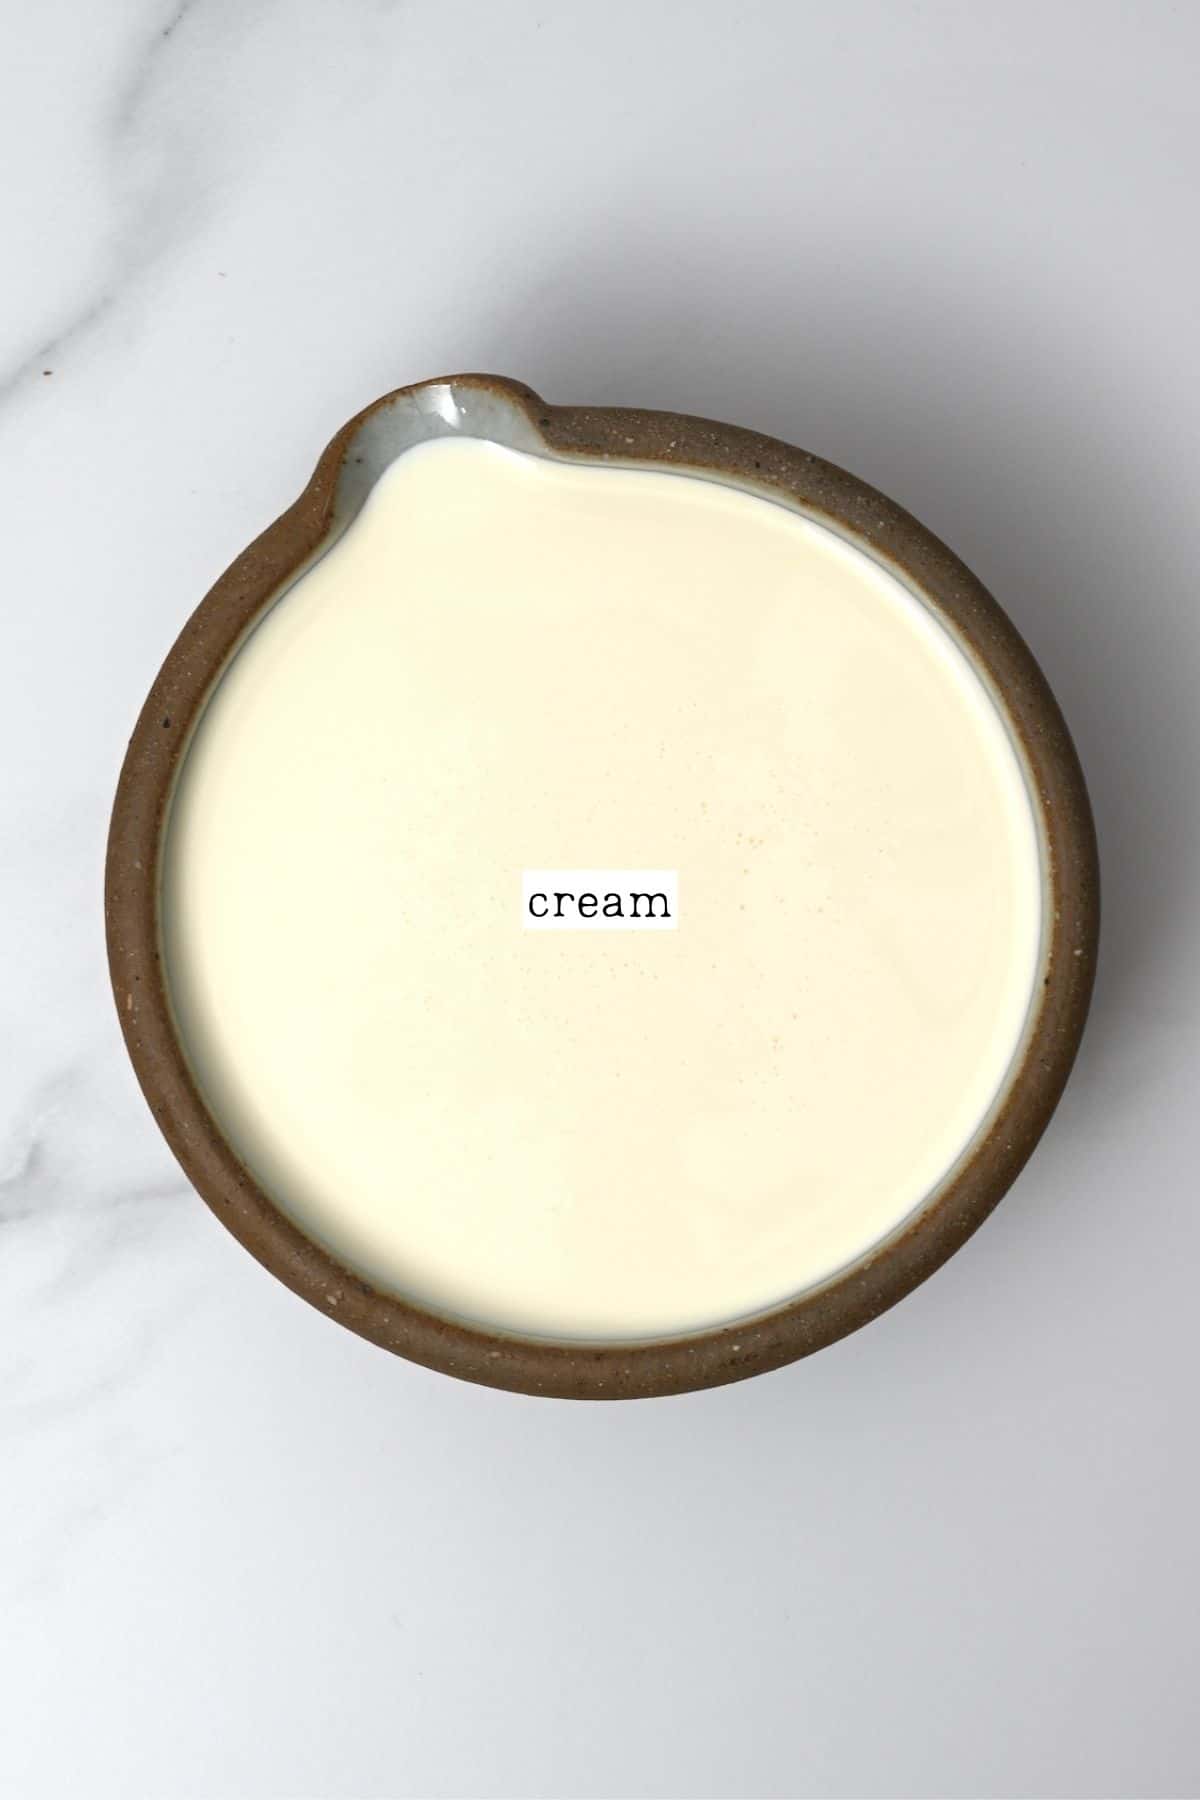 Cream for clotted cream